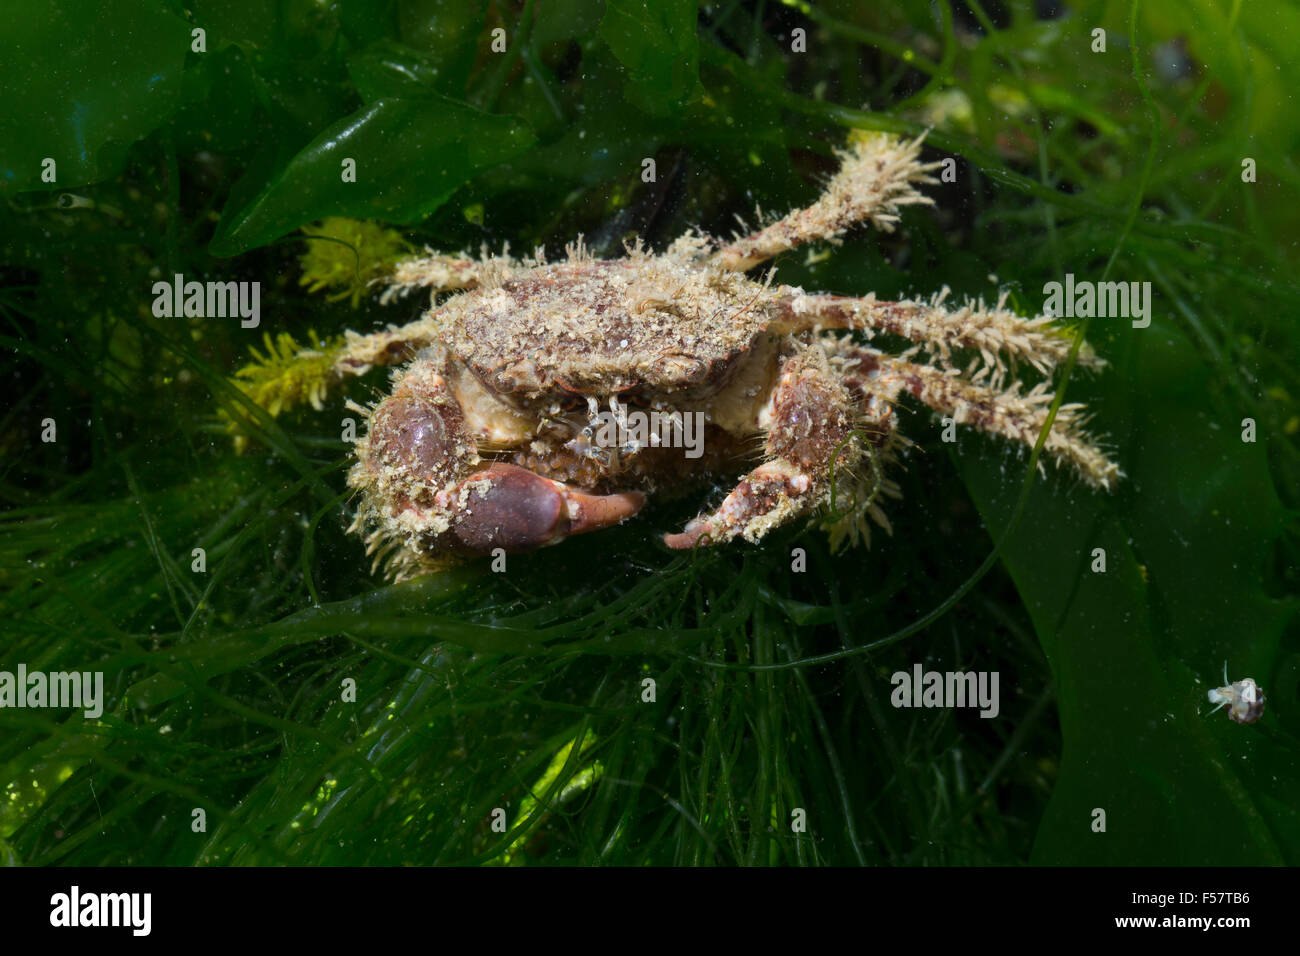 Bristly crab, hairy black crab, bristly xanthid crab, Europäische Borstenkrabbe, Borsten-Krabbe, Haarkrabbe, Pilumnus hirtellus Stock Photo